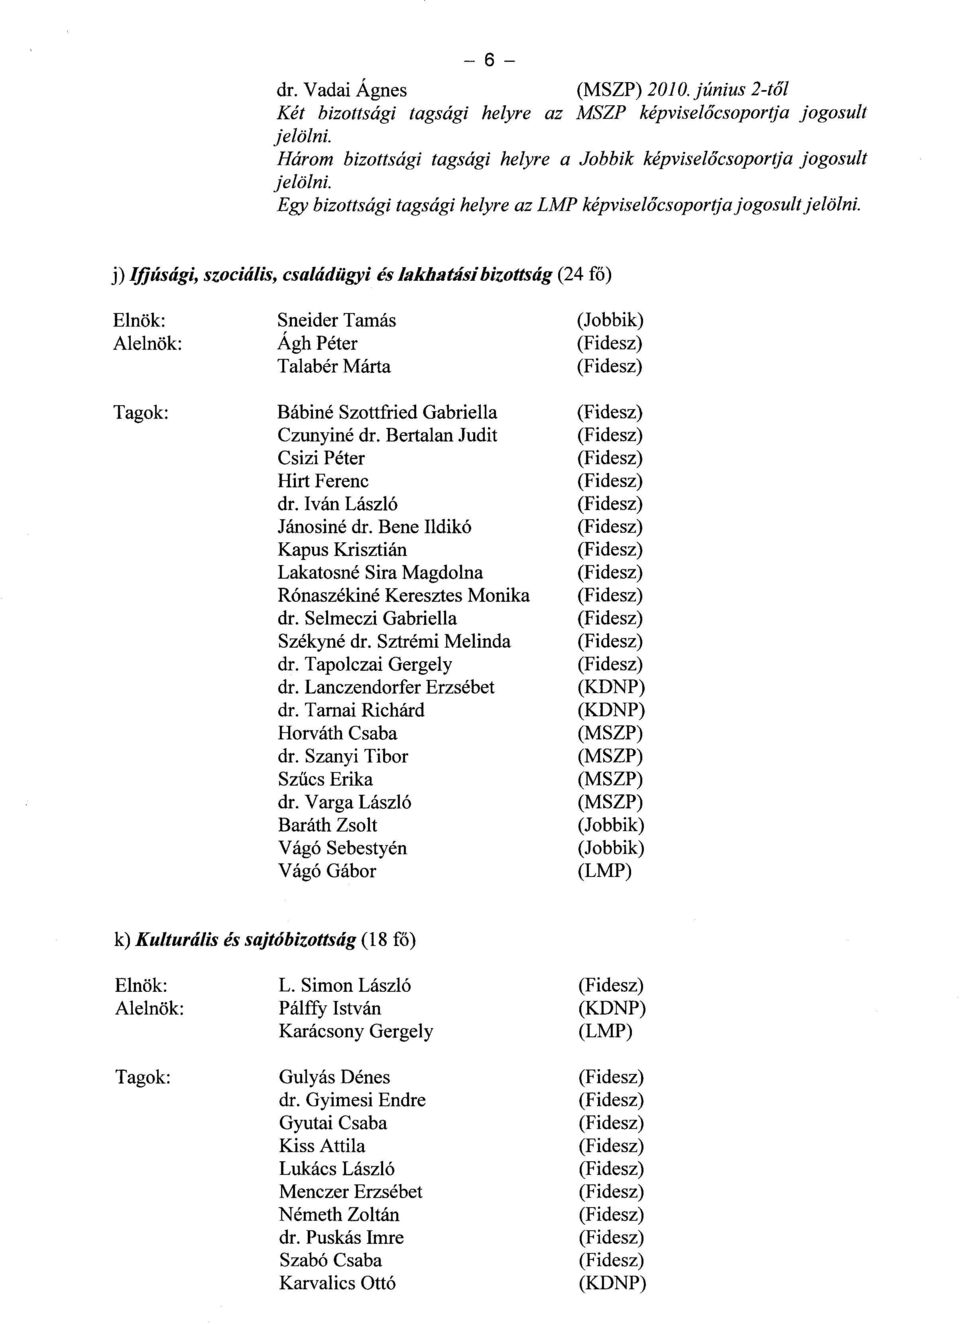 az Országgyűlés bizottságainak létrehozásáról, tisztségviselőinek és  tagjainak megválasztásáró l - PDF Ingyenes letöltés